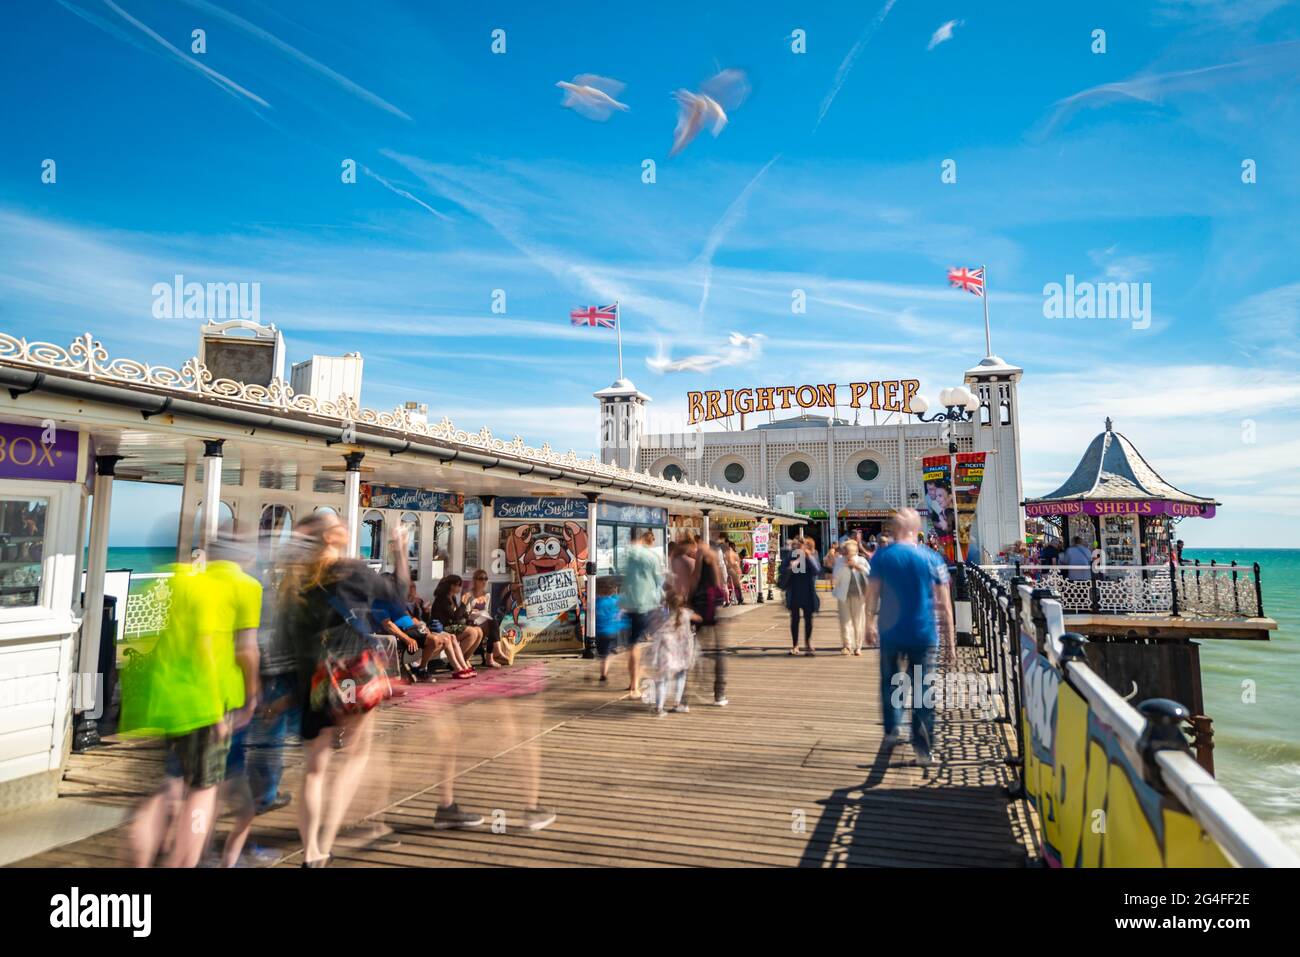 Touristes à Brighton Palace Pier avec mouettes, longue exposition, Brighton, East Sussex, Angleterre, Royaume-Uni Banque D'Images